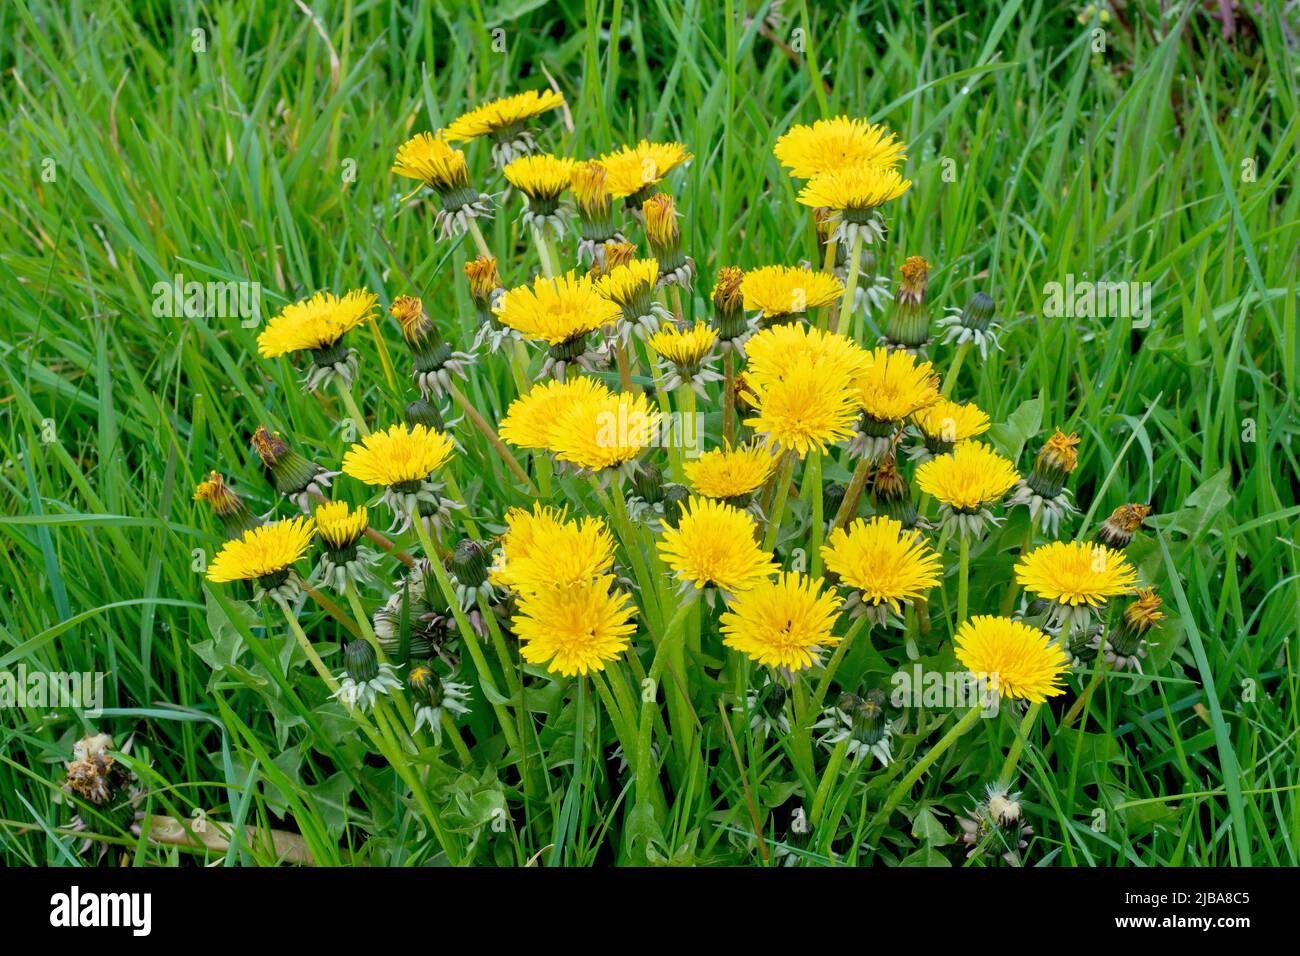 Les mauvaises herbes graminées sauvages dans la campagne Photo Stock - Alamy